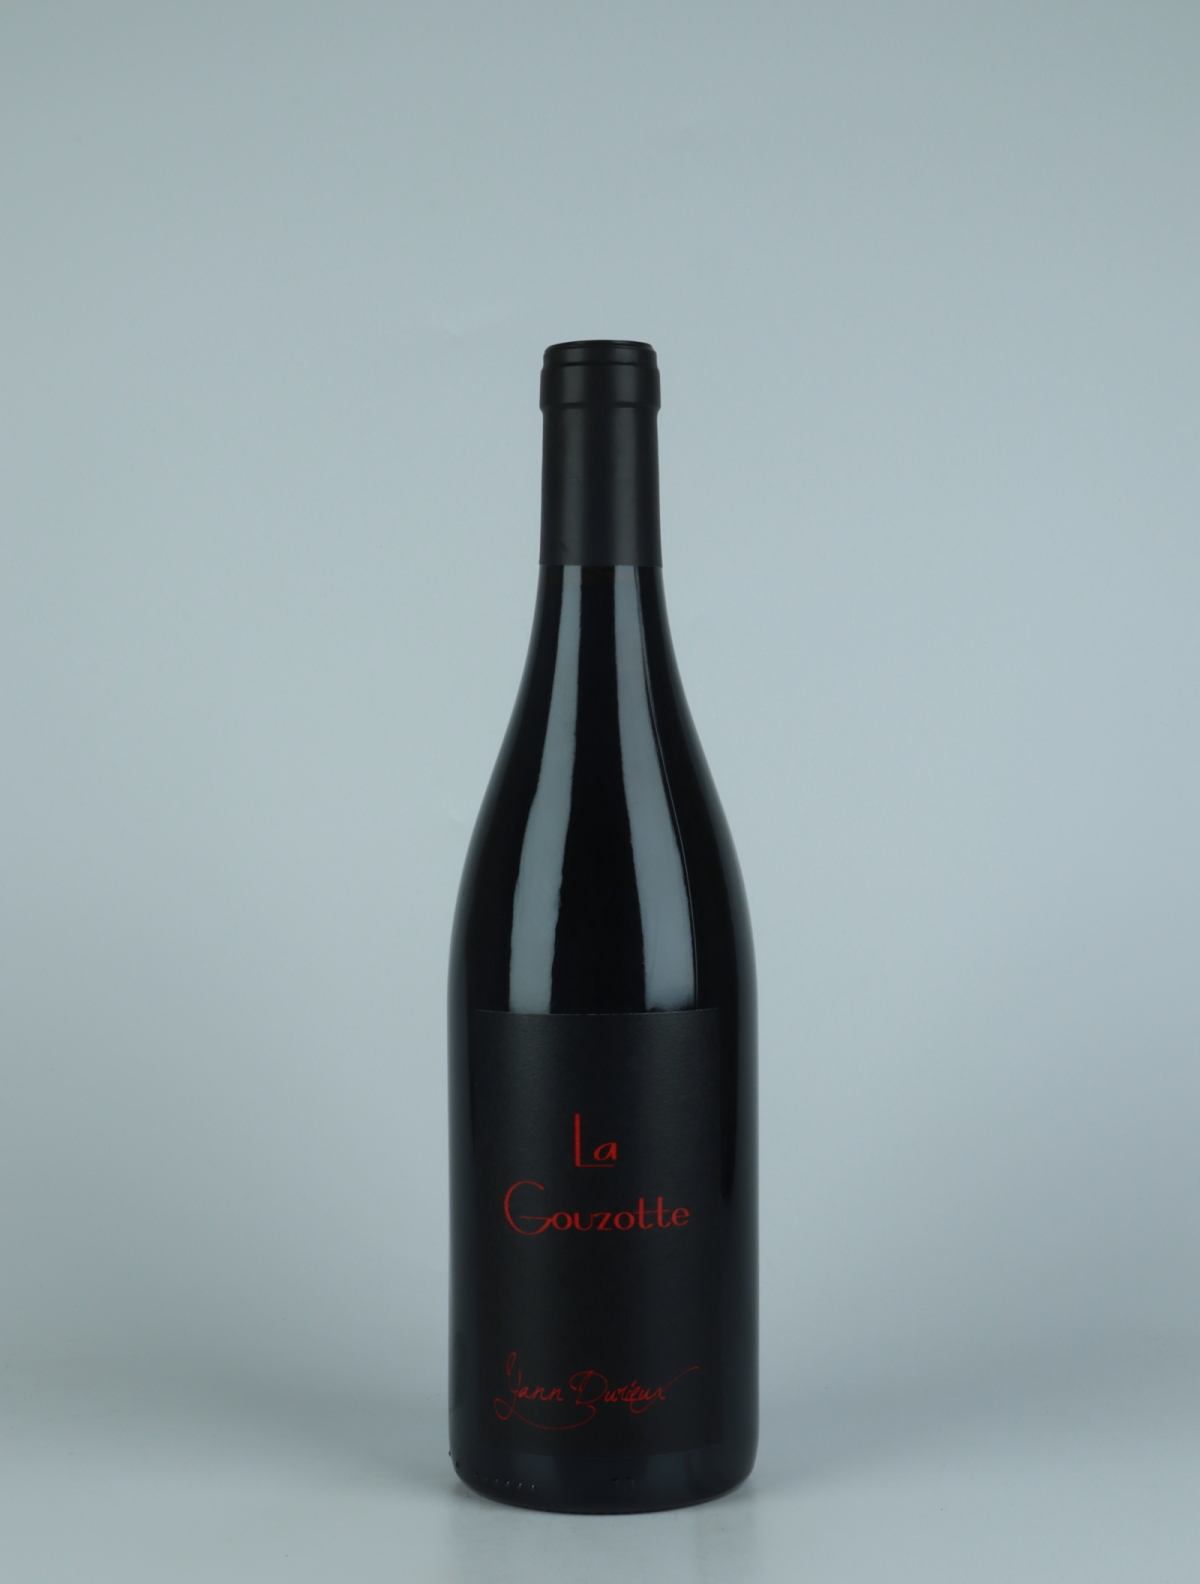 En flaske 2020 La Gouzotte Rødvin fra Yann Durieux, Bourgogne i Frankrig